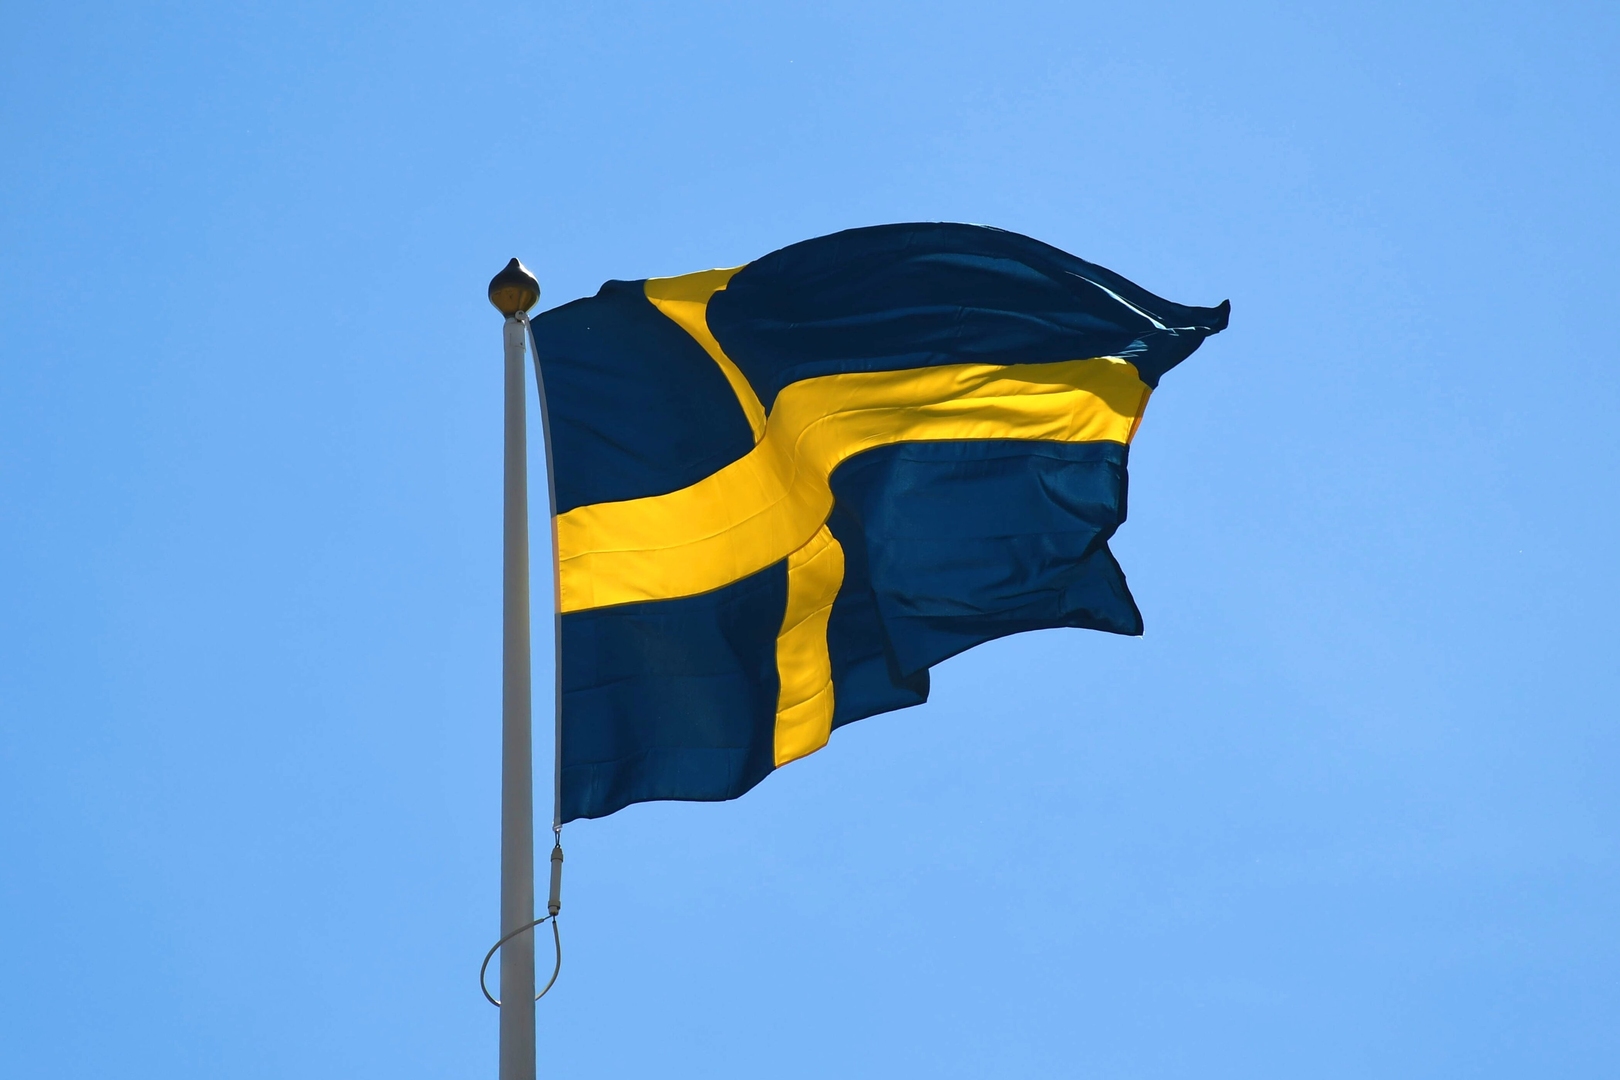 وزيرة المالية السويدية تحذر من ركود قد يستمر لسنوات